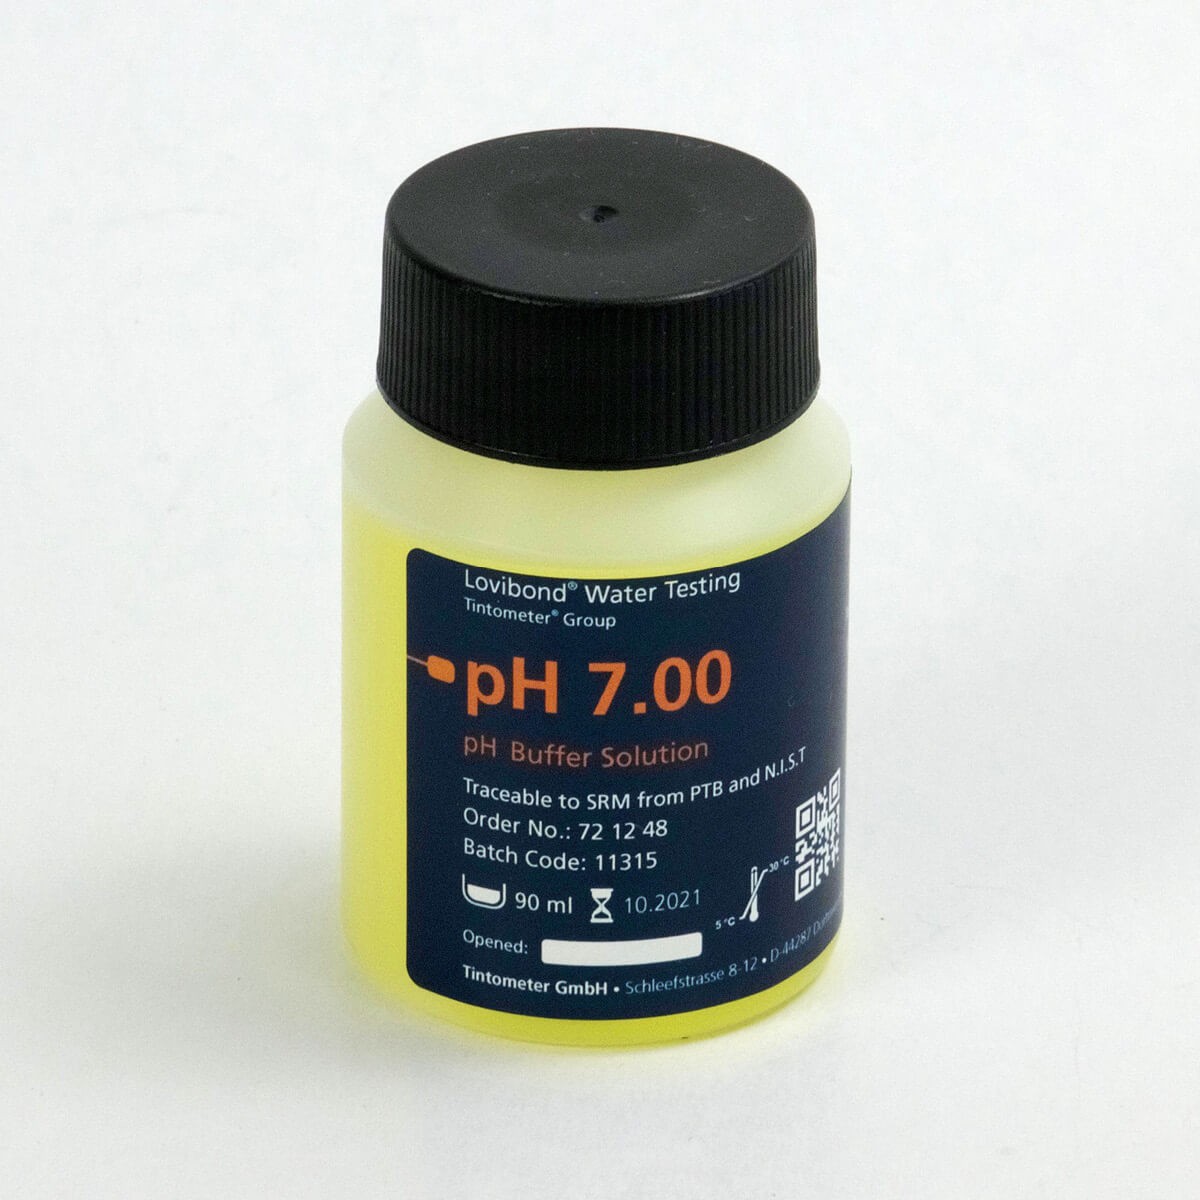 721248 pH-缓冲溶液 7.00 (25 °C) 黄，90 ml 可回溯至 N.I.S.T.